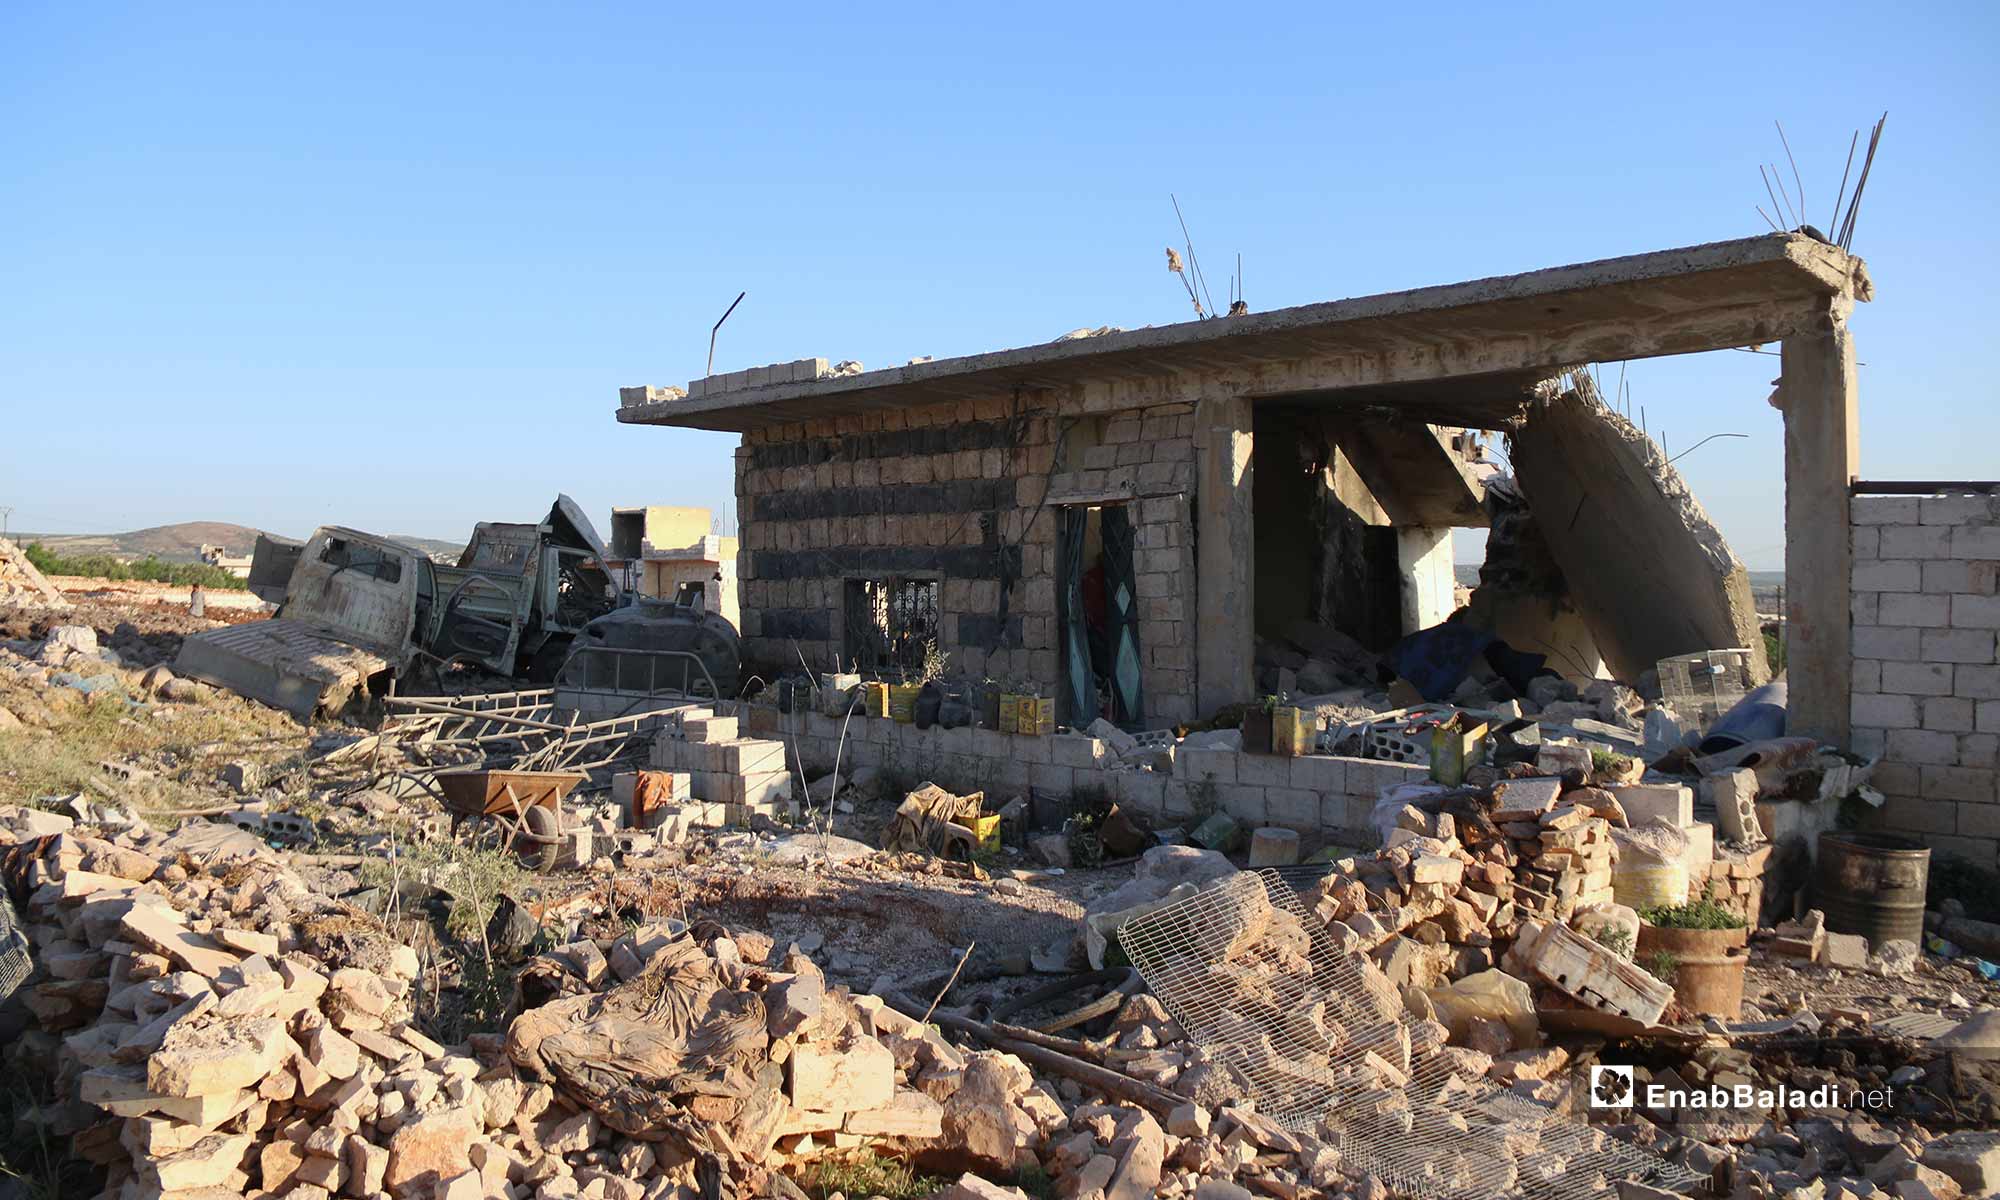  أثار الدمار في كفرنبل بريف إدلب نتيجة قصفها بغارات روسية - 20 من أيار 2019 (عنب بلدي)